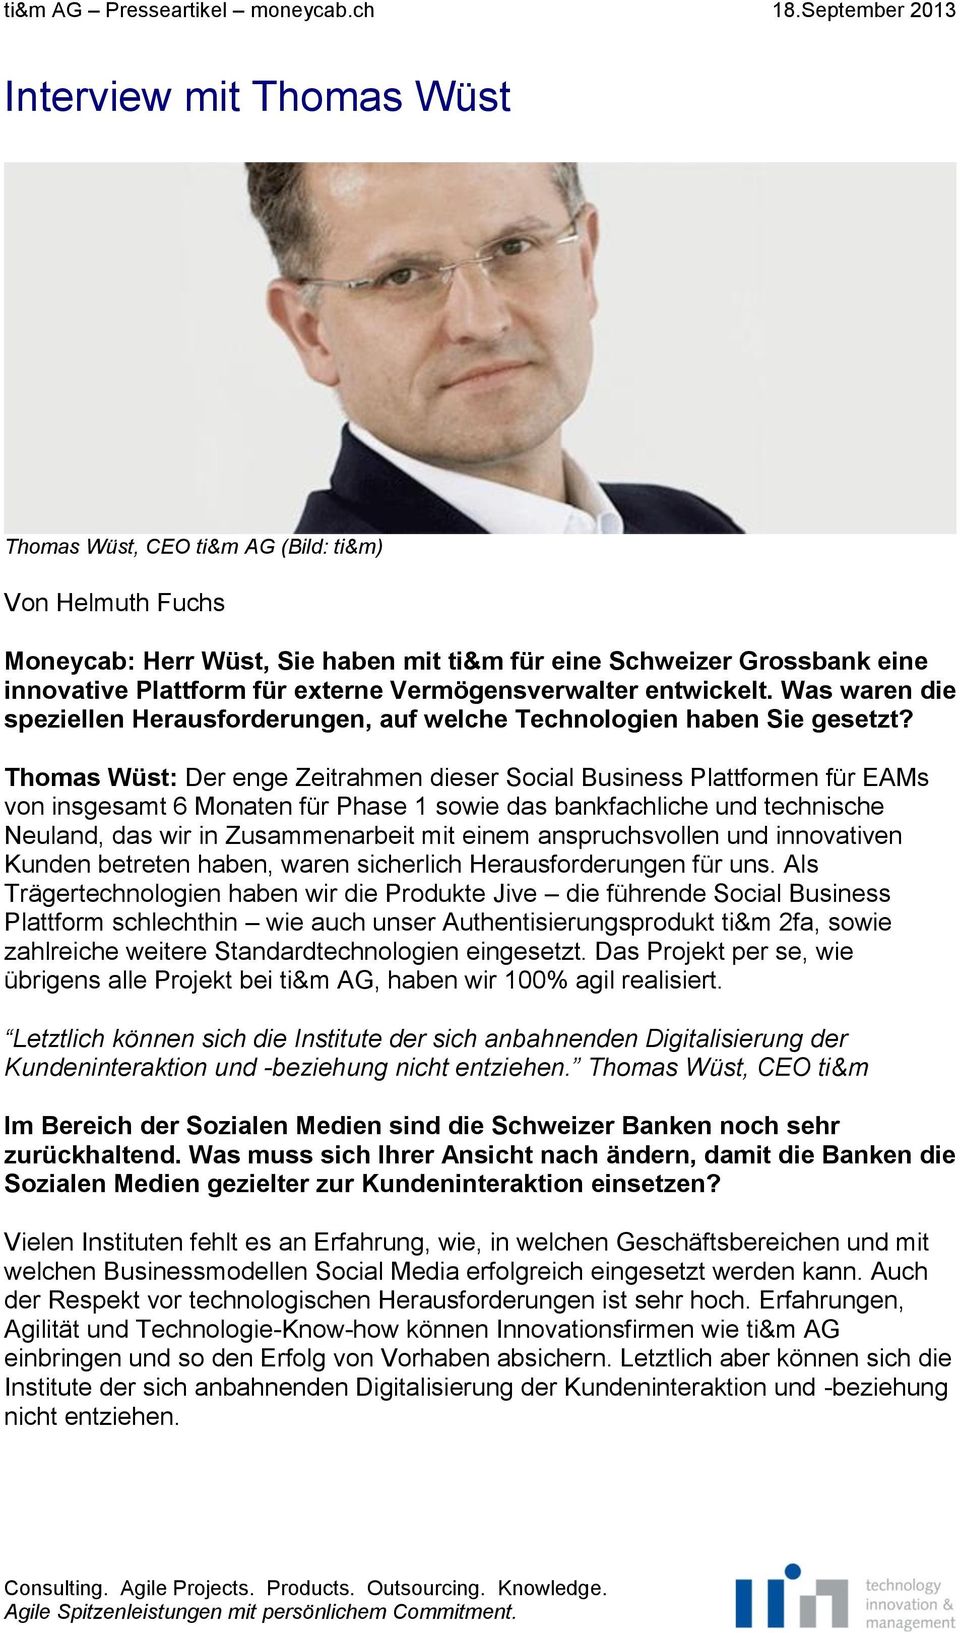 Thomas Wüst: Der enge Zeitrahmen dieser Social Business Plattformen für EAMs von insgesamt 6 Monaten für Phase 1 sowie das bankfachliche und technische Neuland, das wir in Zusammenarbeit mit einem